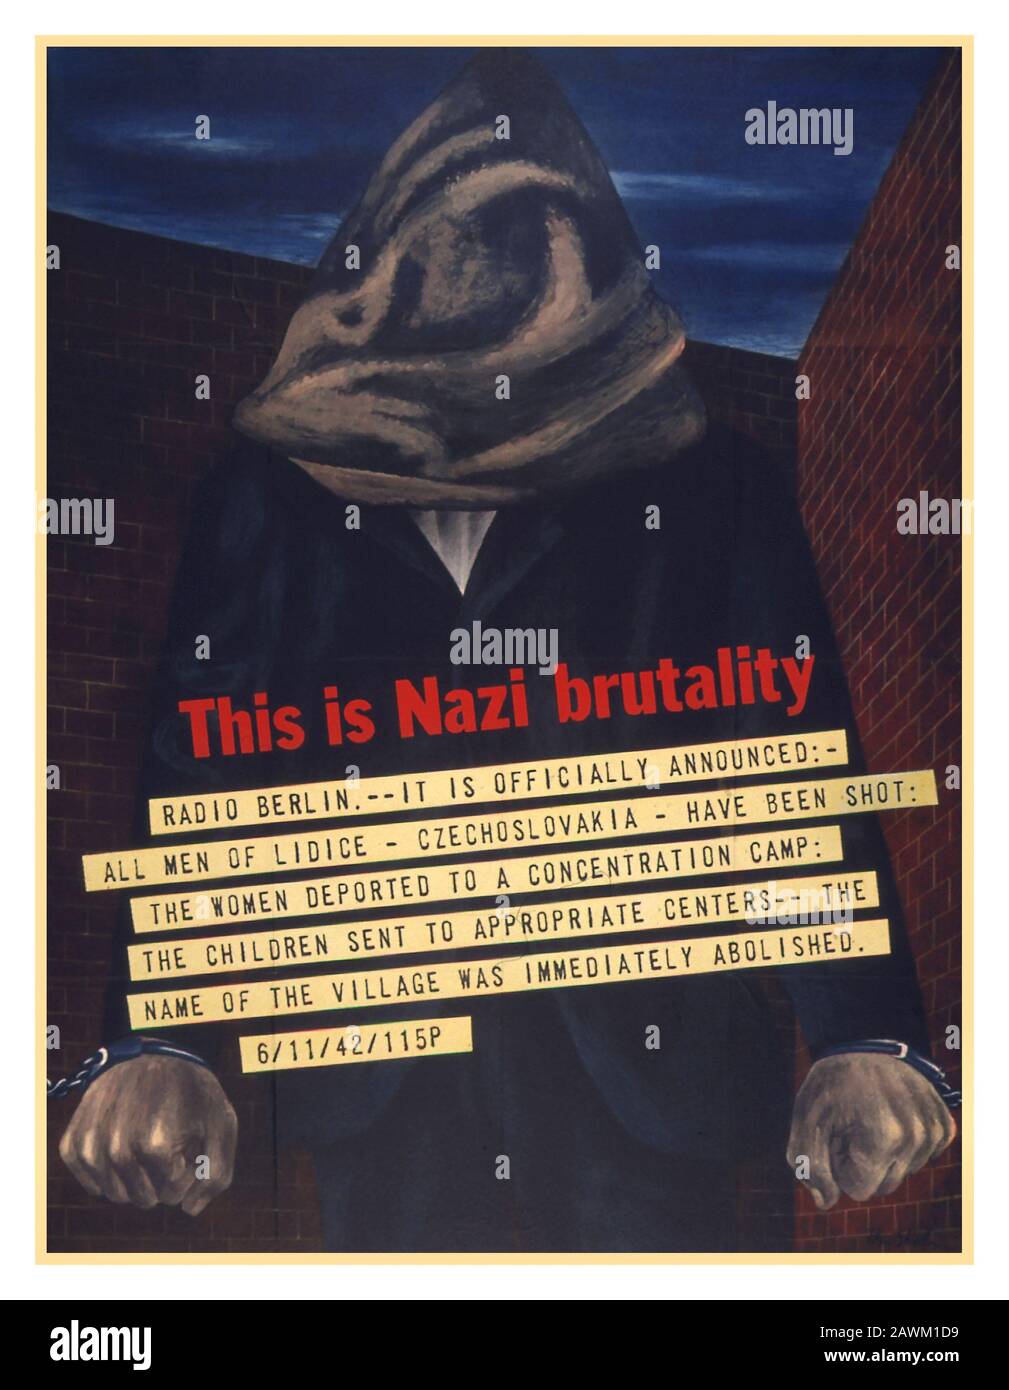 Retro Ww2 Propaganda-Poster "This is Nazi Brutality"-TELEGRAMM liest "Radio Berlin All Men of Lidice have shot" etc Poster, das auf ein entsetzliches wahres Nazi-Kriegsverbrechen im vom NS-besetzten Polen im zweiten Weltkrieg von 1942 verweist Stockfoto